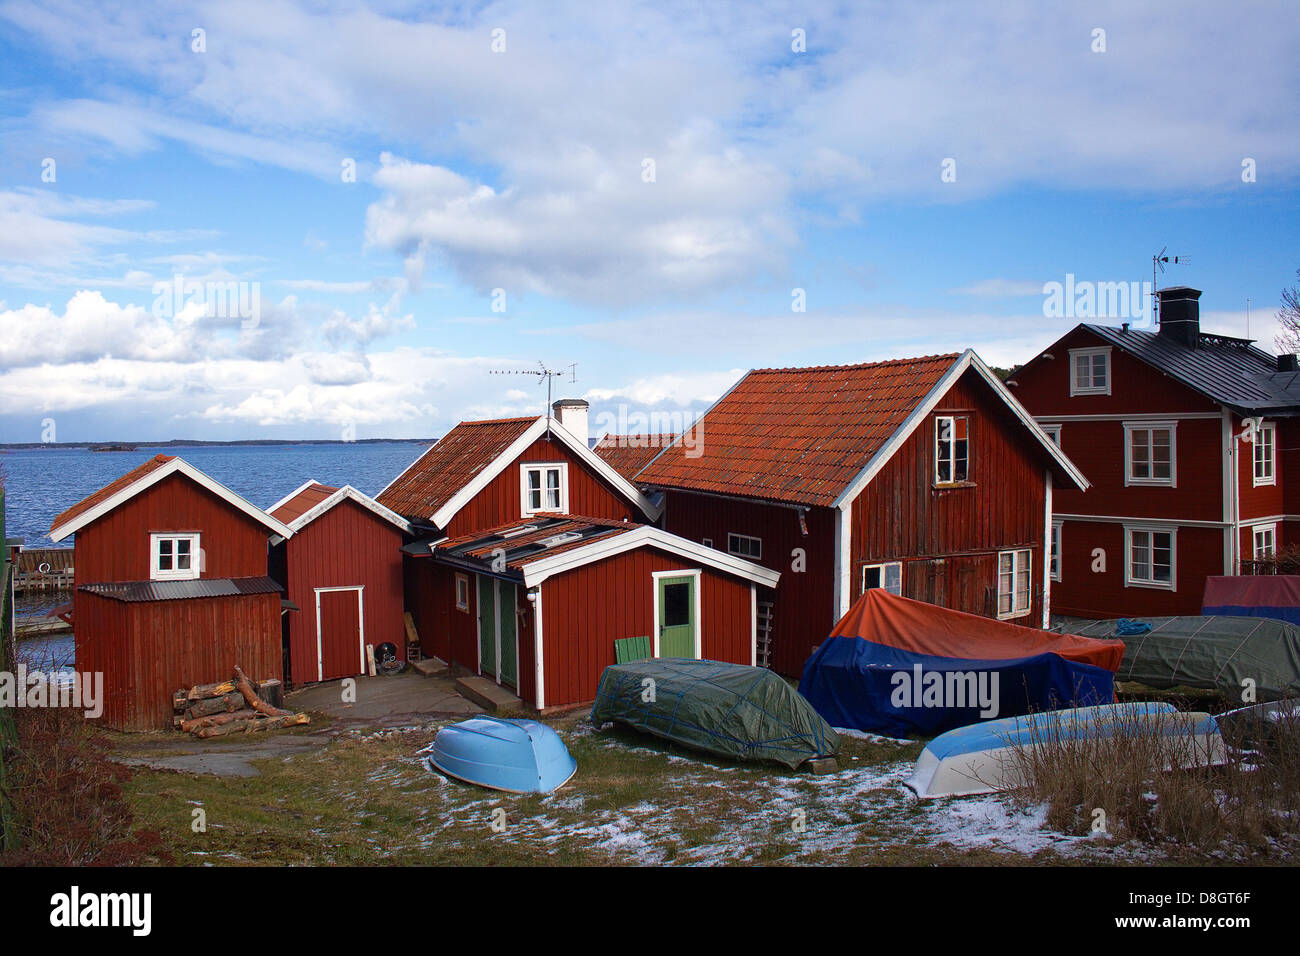 Case svedese nella stagione invernale Foto Stock